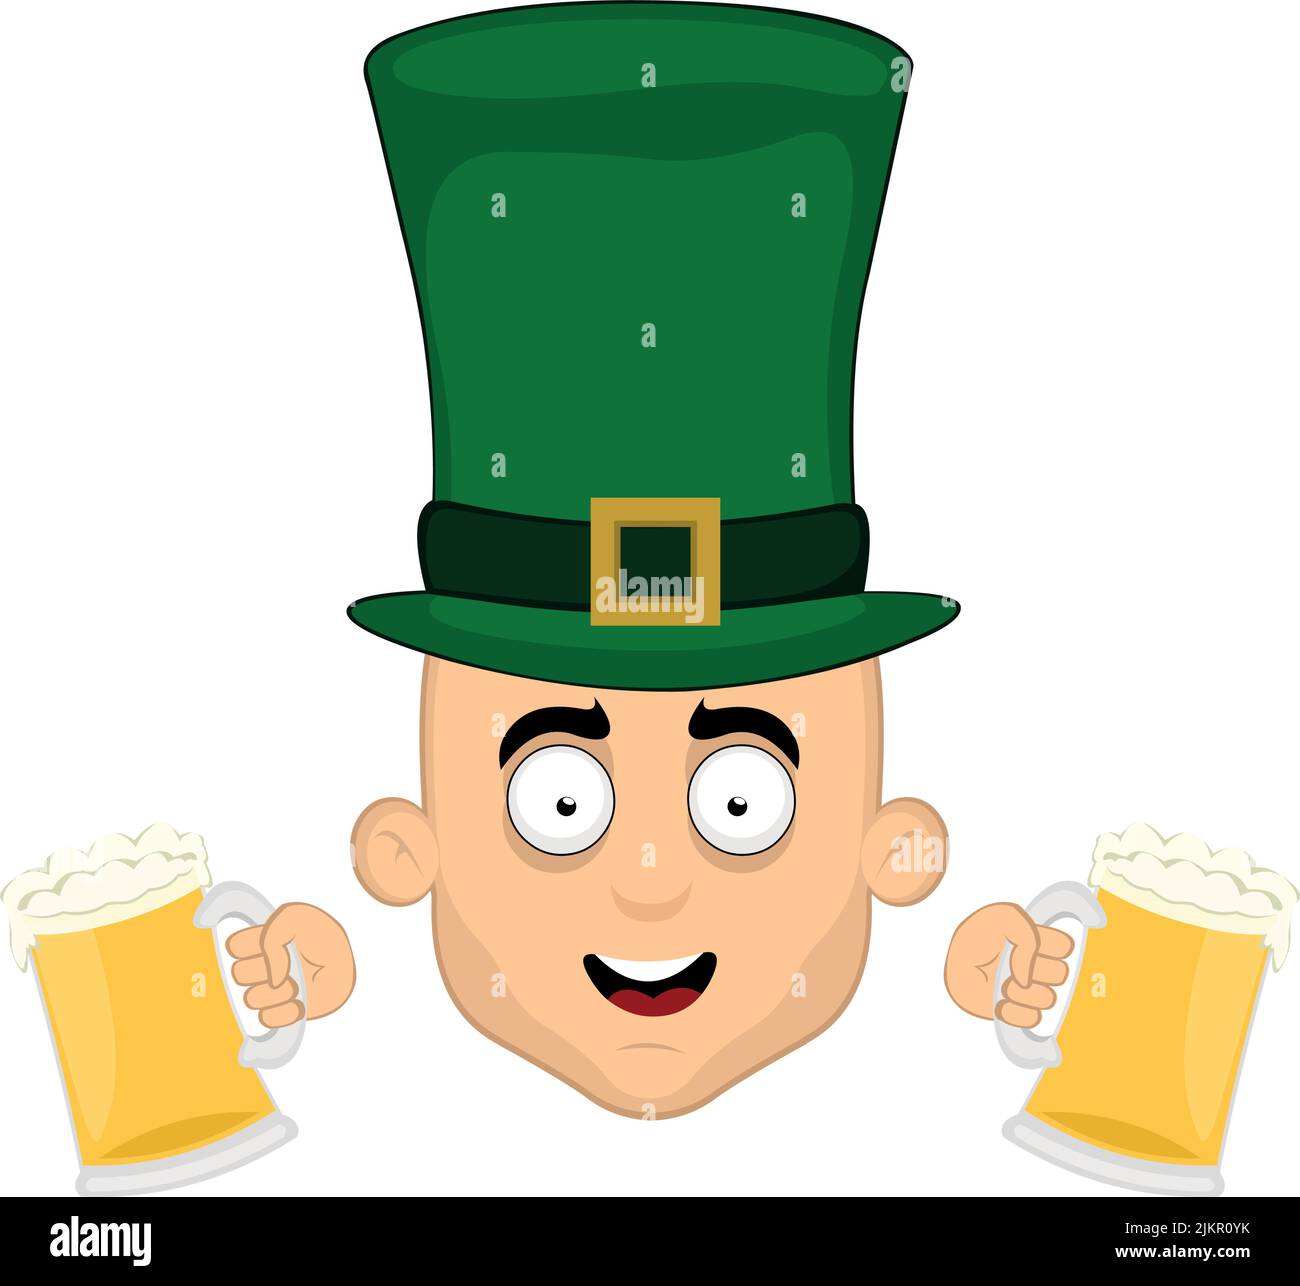 Illustration vectorielle du visage d'un personnage de dessin animé d'homme, avec un chapeau d'élan sur sa tête et deux verres de bière entre ses mains, en commémoration d'okto Illustration de Vecteur